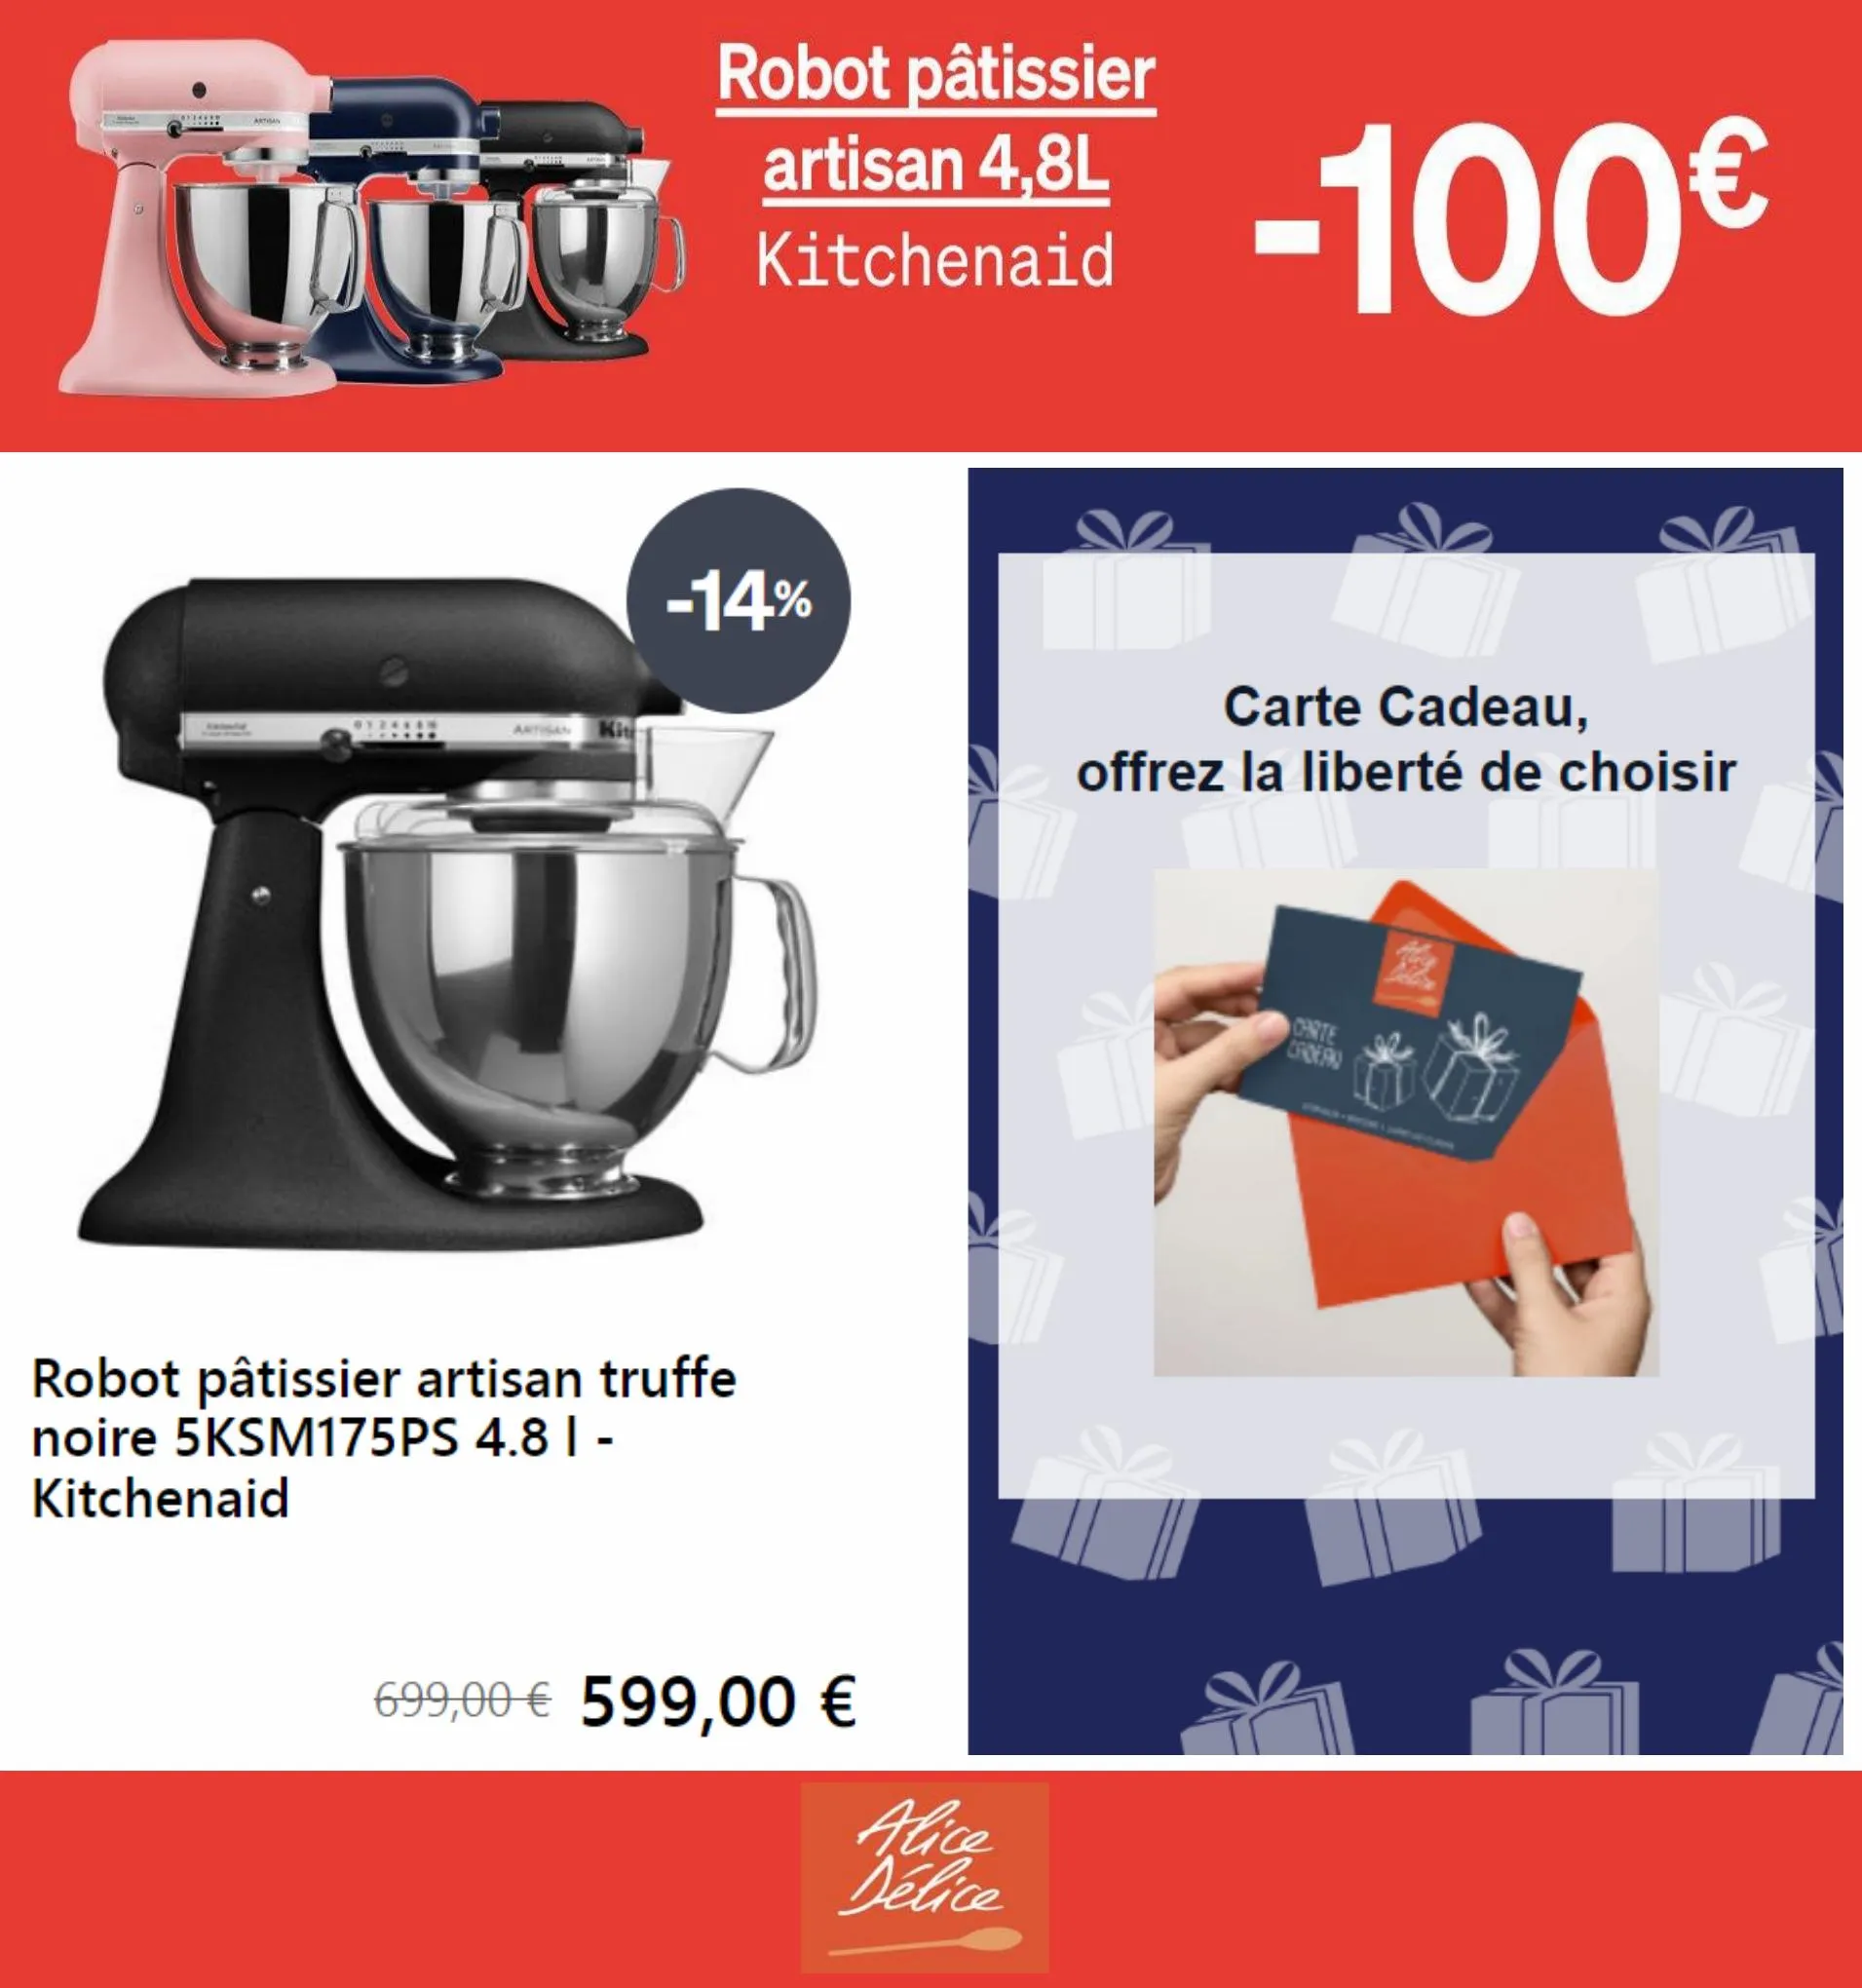 Catalogue Robot pâtisier artisan 4,8L -100€, page 00005